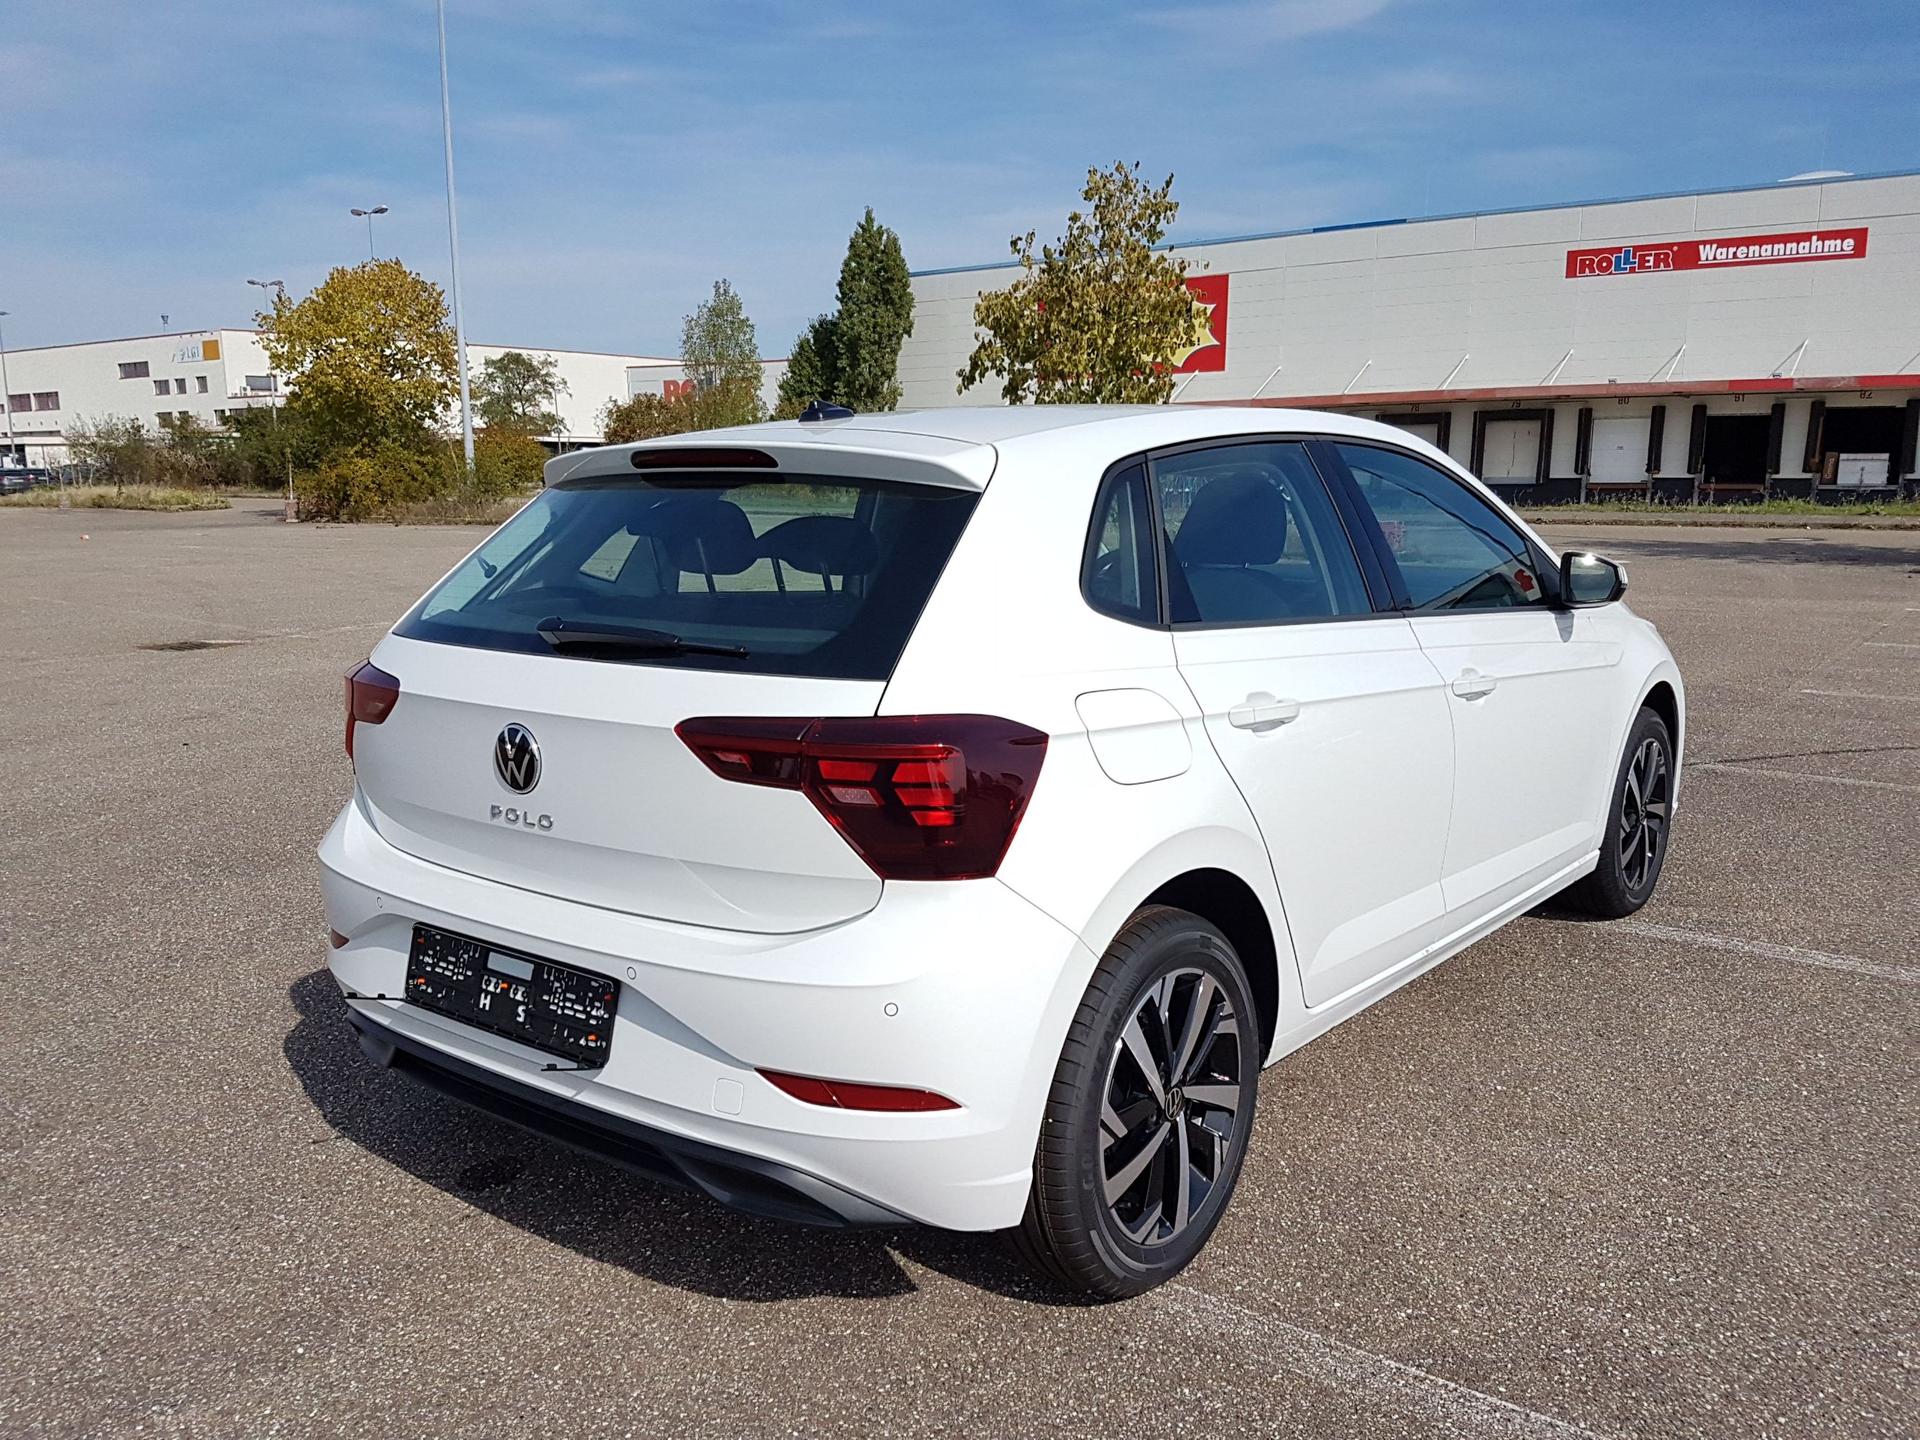 Kaufe Für Skoda SCHNELLE Armlehne Für Volkswagen VW Polo 2020 2021